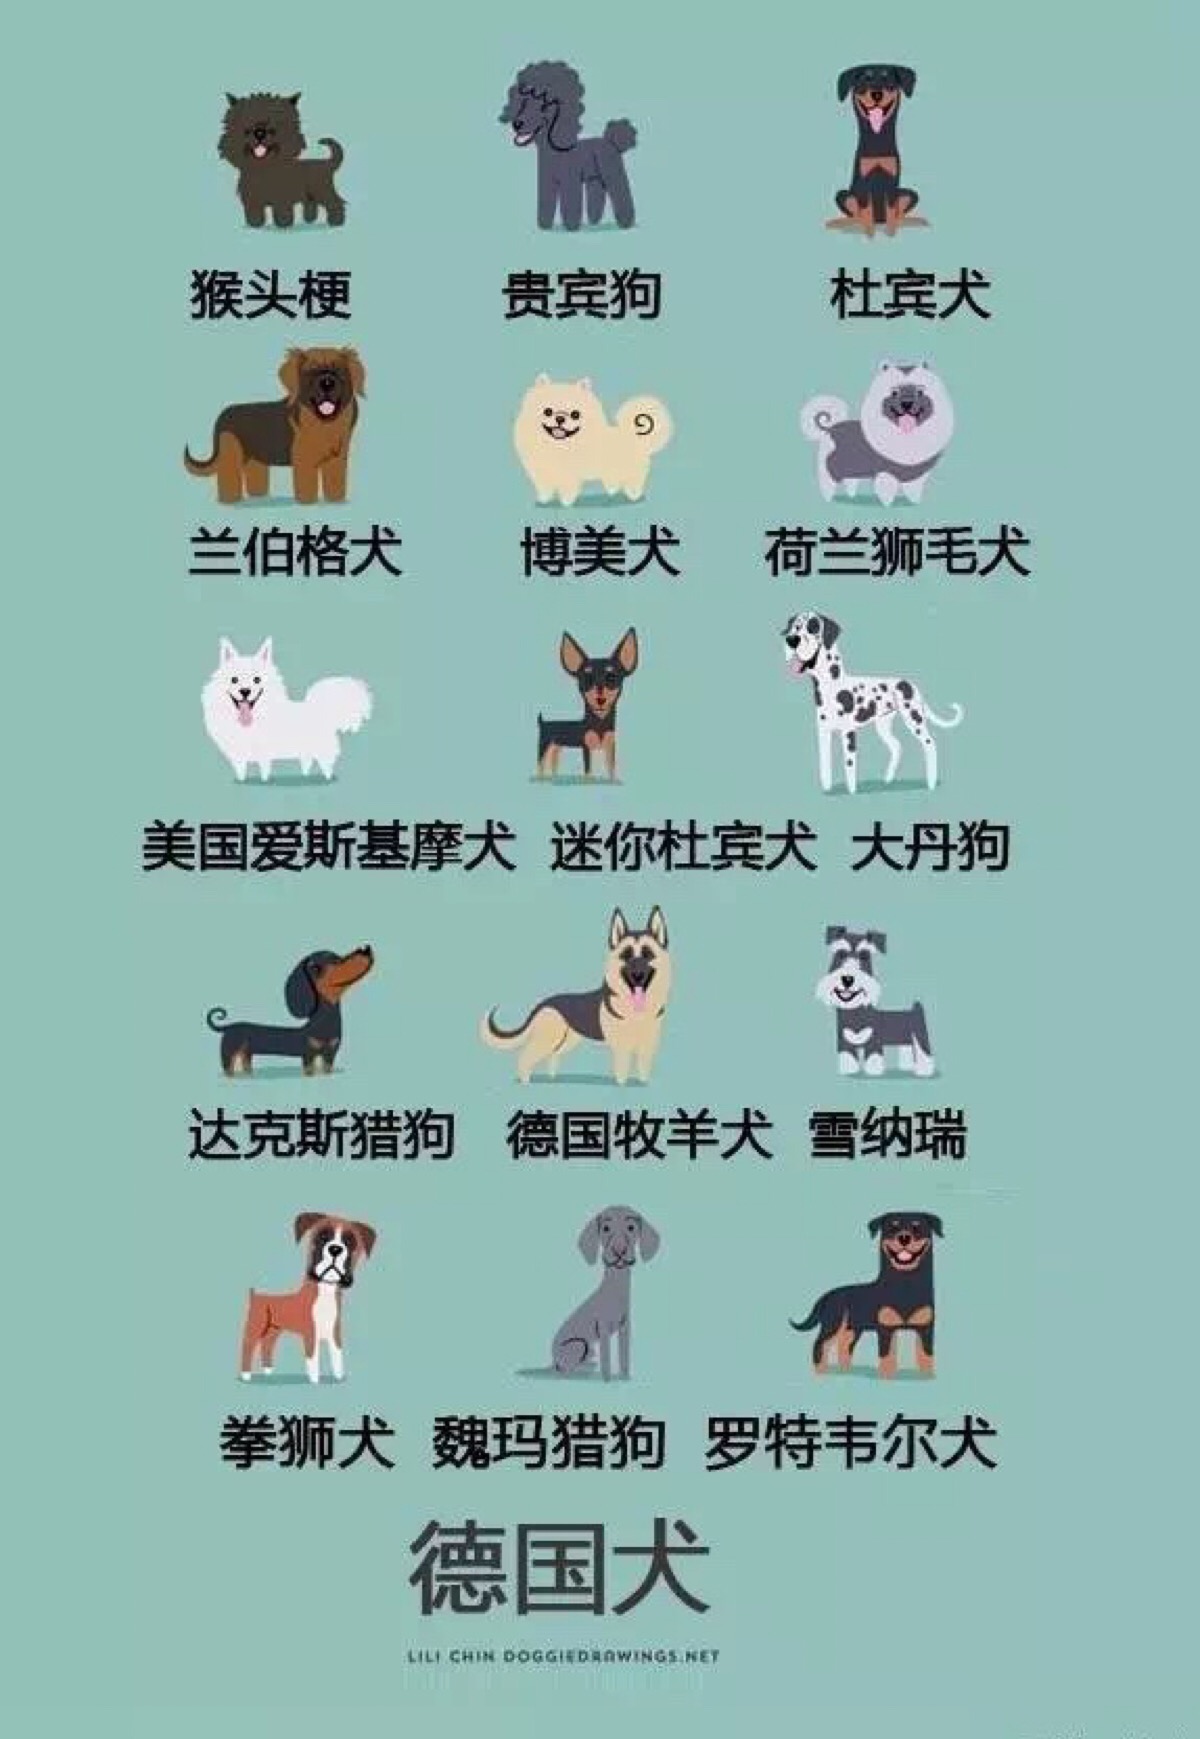 狗的种类有哪些 名称图片